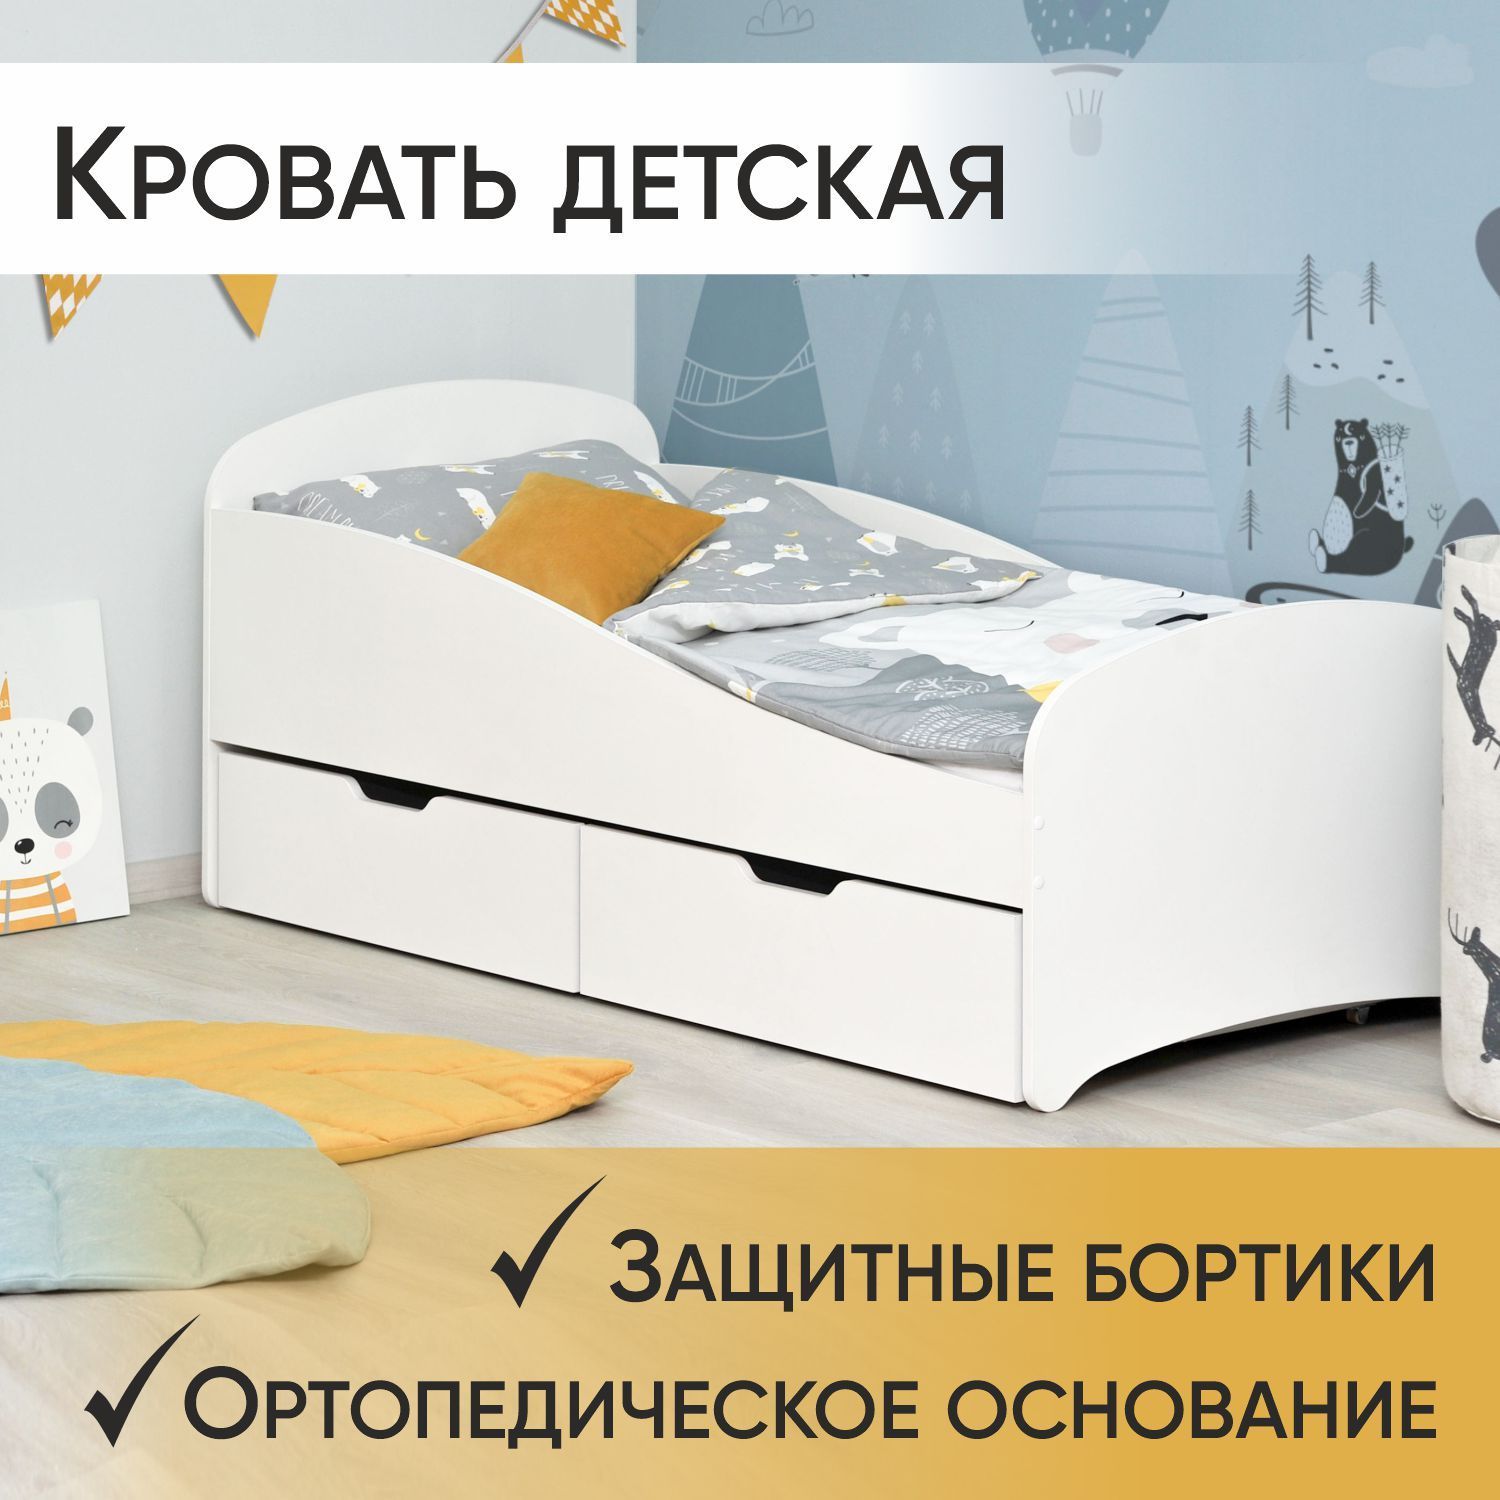 Детские кровати от 3 лет недорого - купить в Москве по низкой цене!